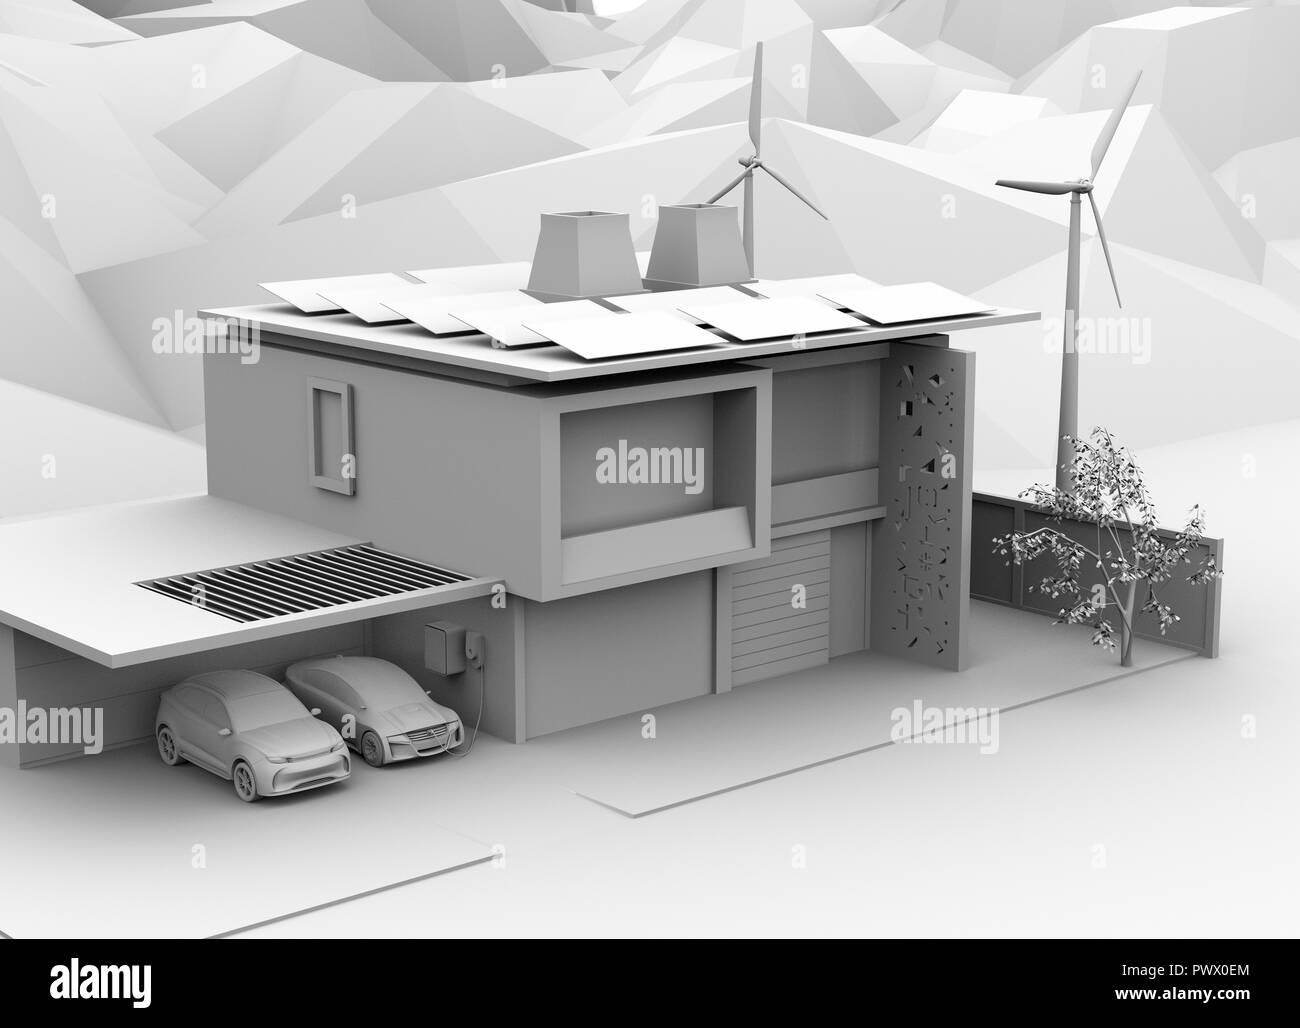 Le rendu d'argile de la recharge du véhicule électrique dans le garage. La maison intelligente alimenté par des panneaux solaires et éolienne. Le rendu 3D image. Banque D'Images